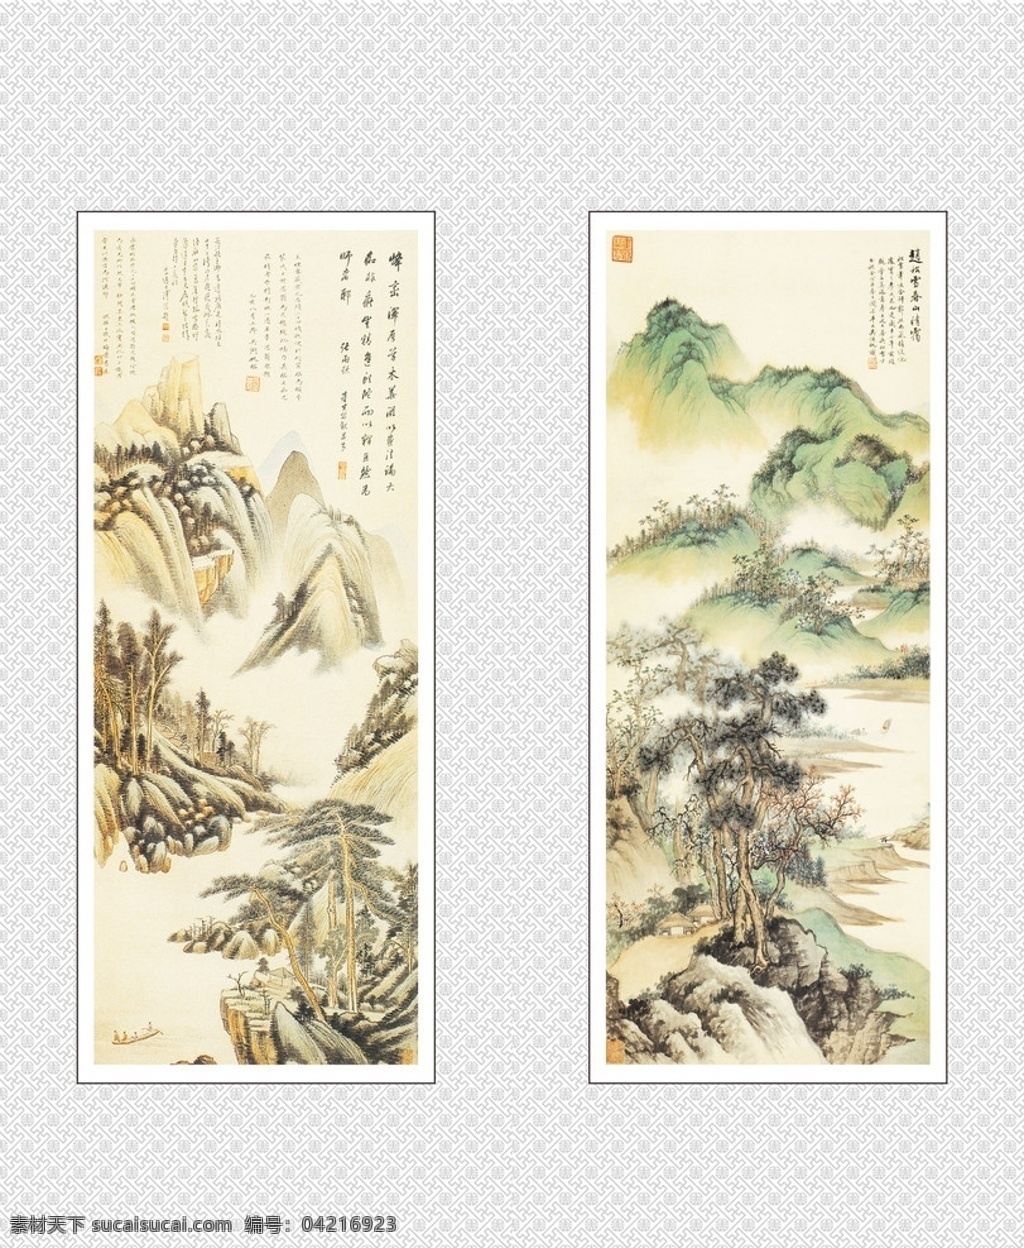 中国画 中国元素 绘画元素 书法 艺术 山水画 水墨画 中国风 淡彩画 绘画书法 文化艺术